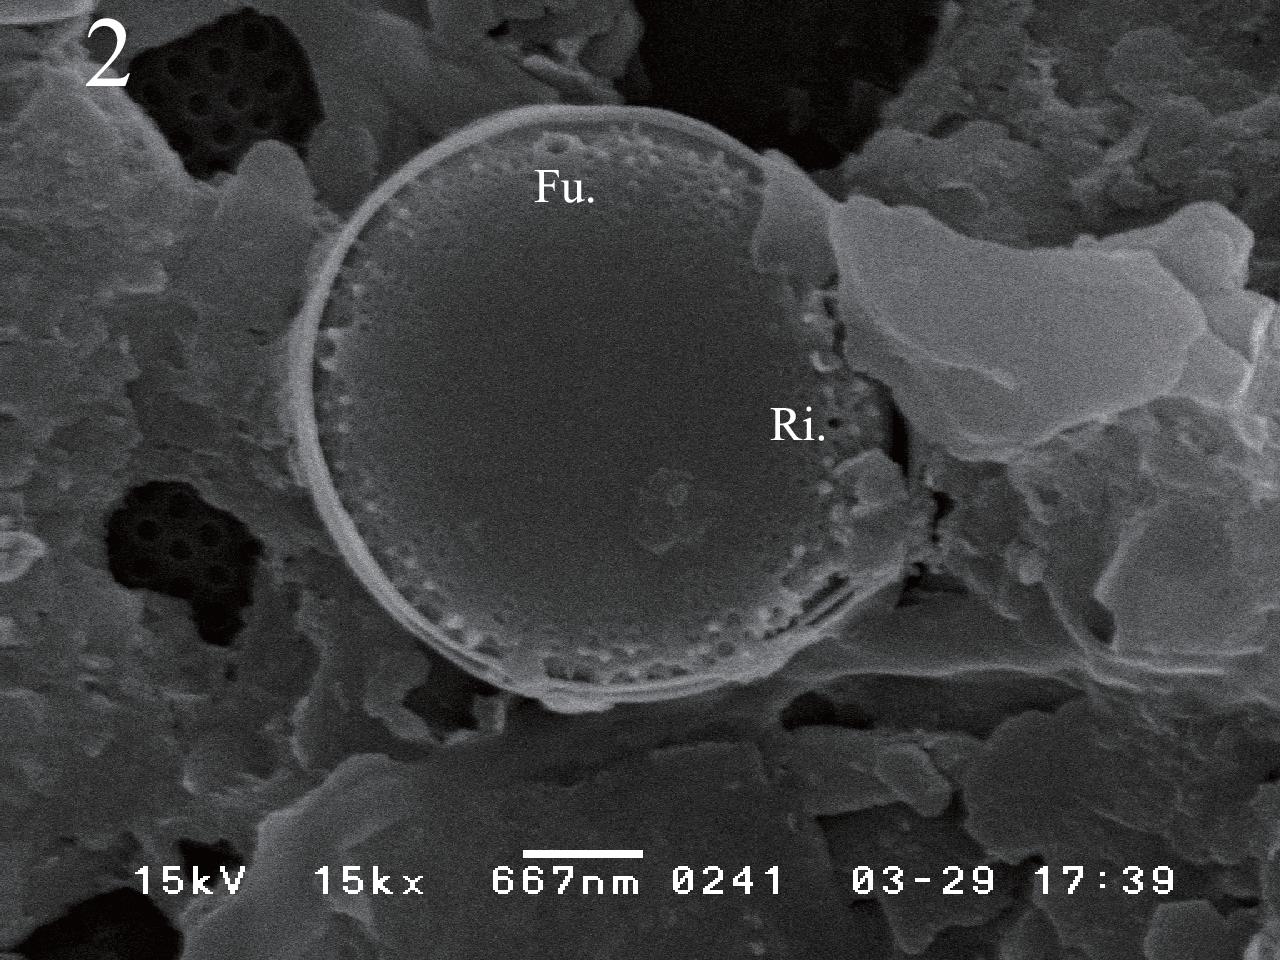 Cyclotella atomus var. marina SEM photos. Figs 2 & 3. External view, showing marginal fultoportula (Fu.) and rimoportula (Ri.).